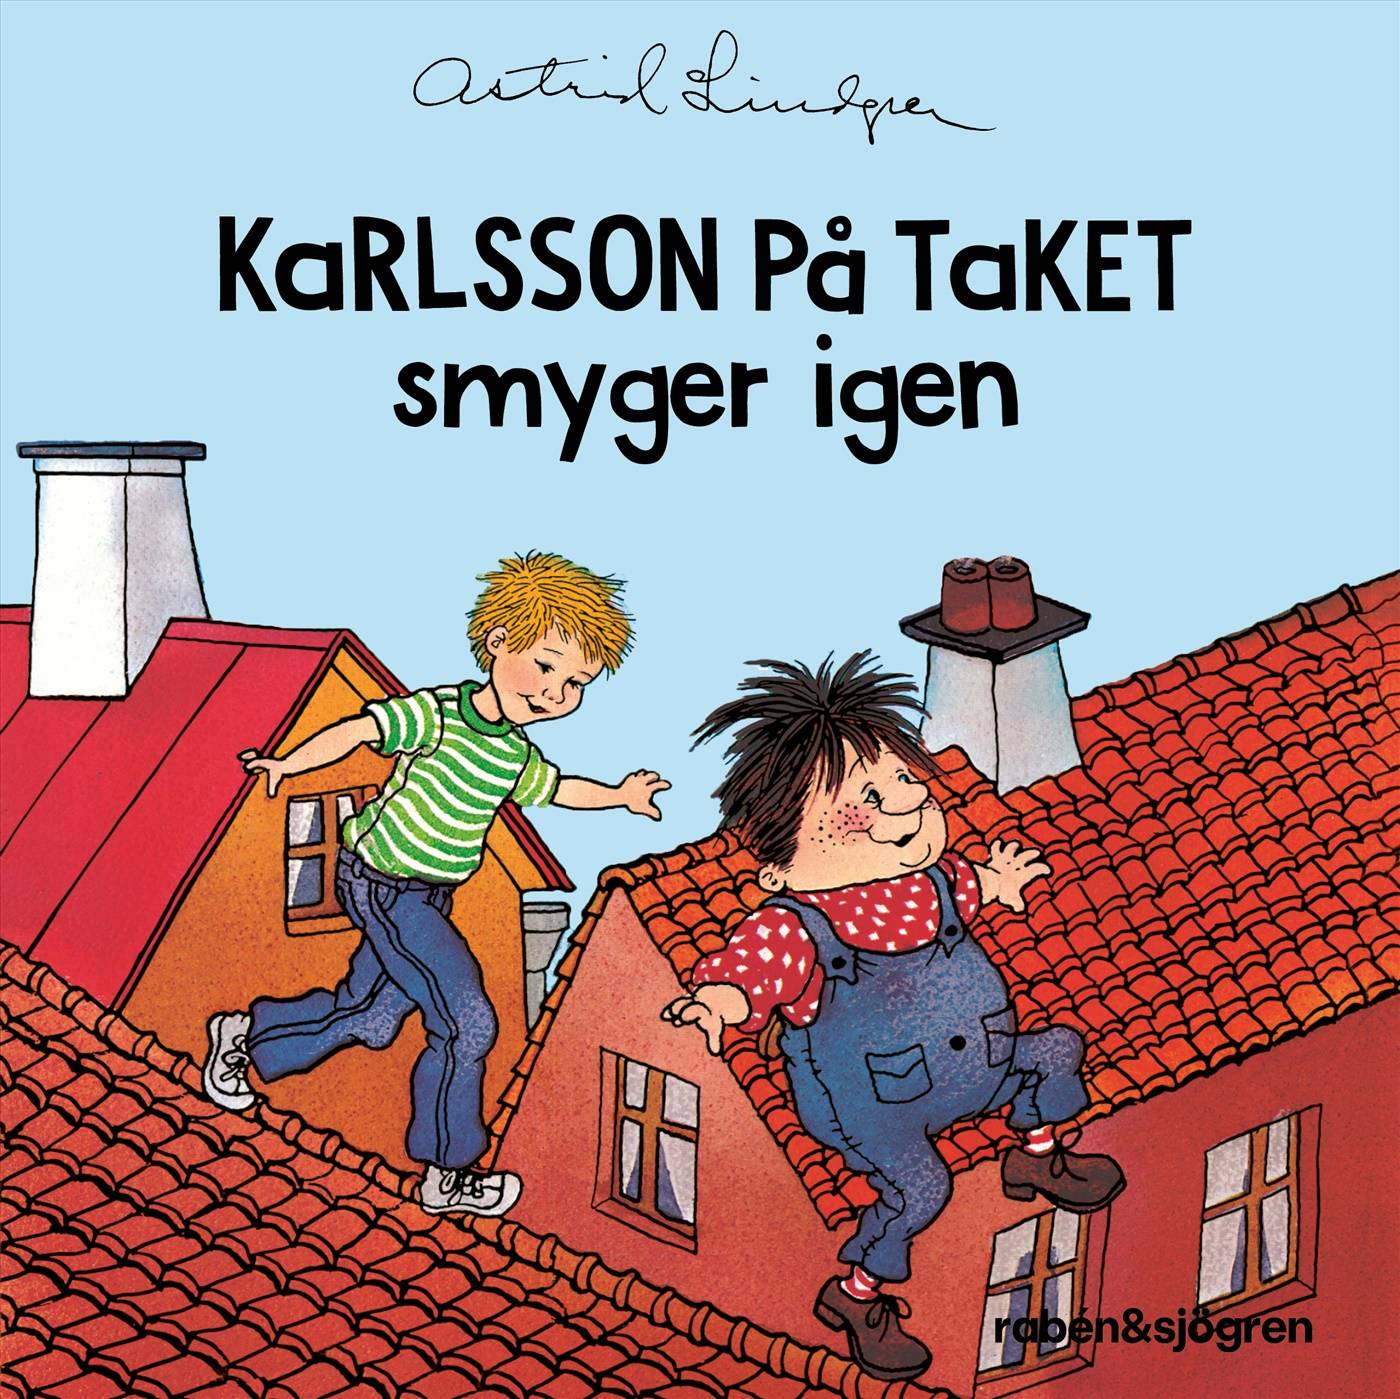 Karlsson på taket smyger igen